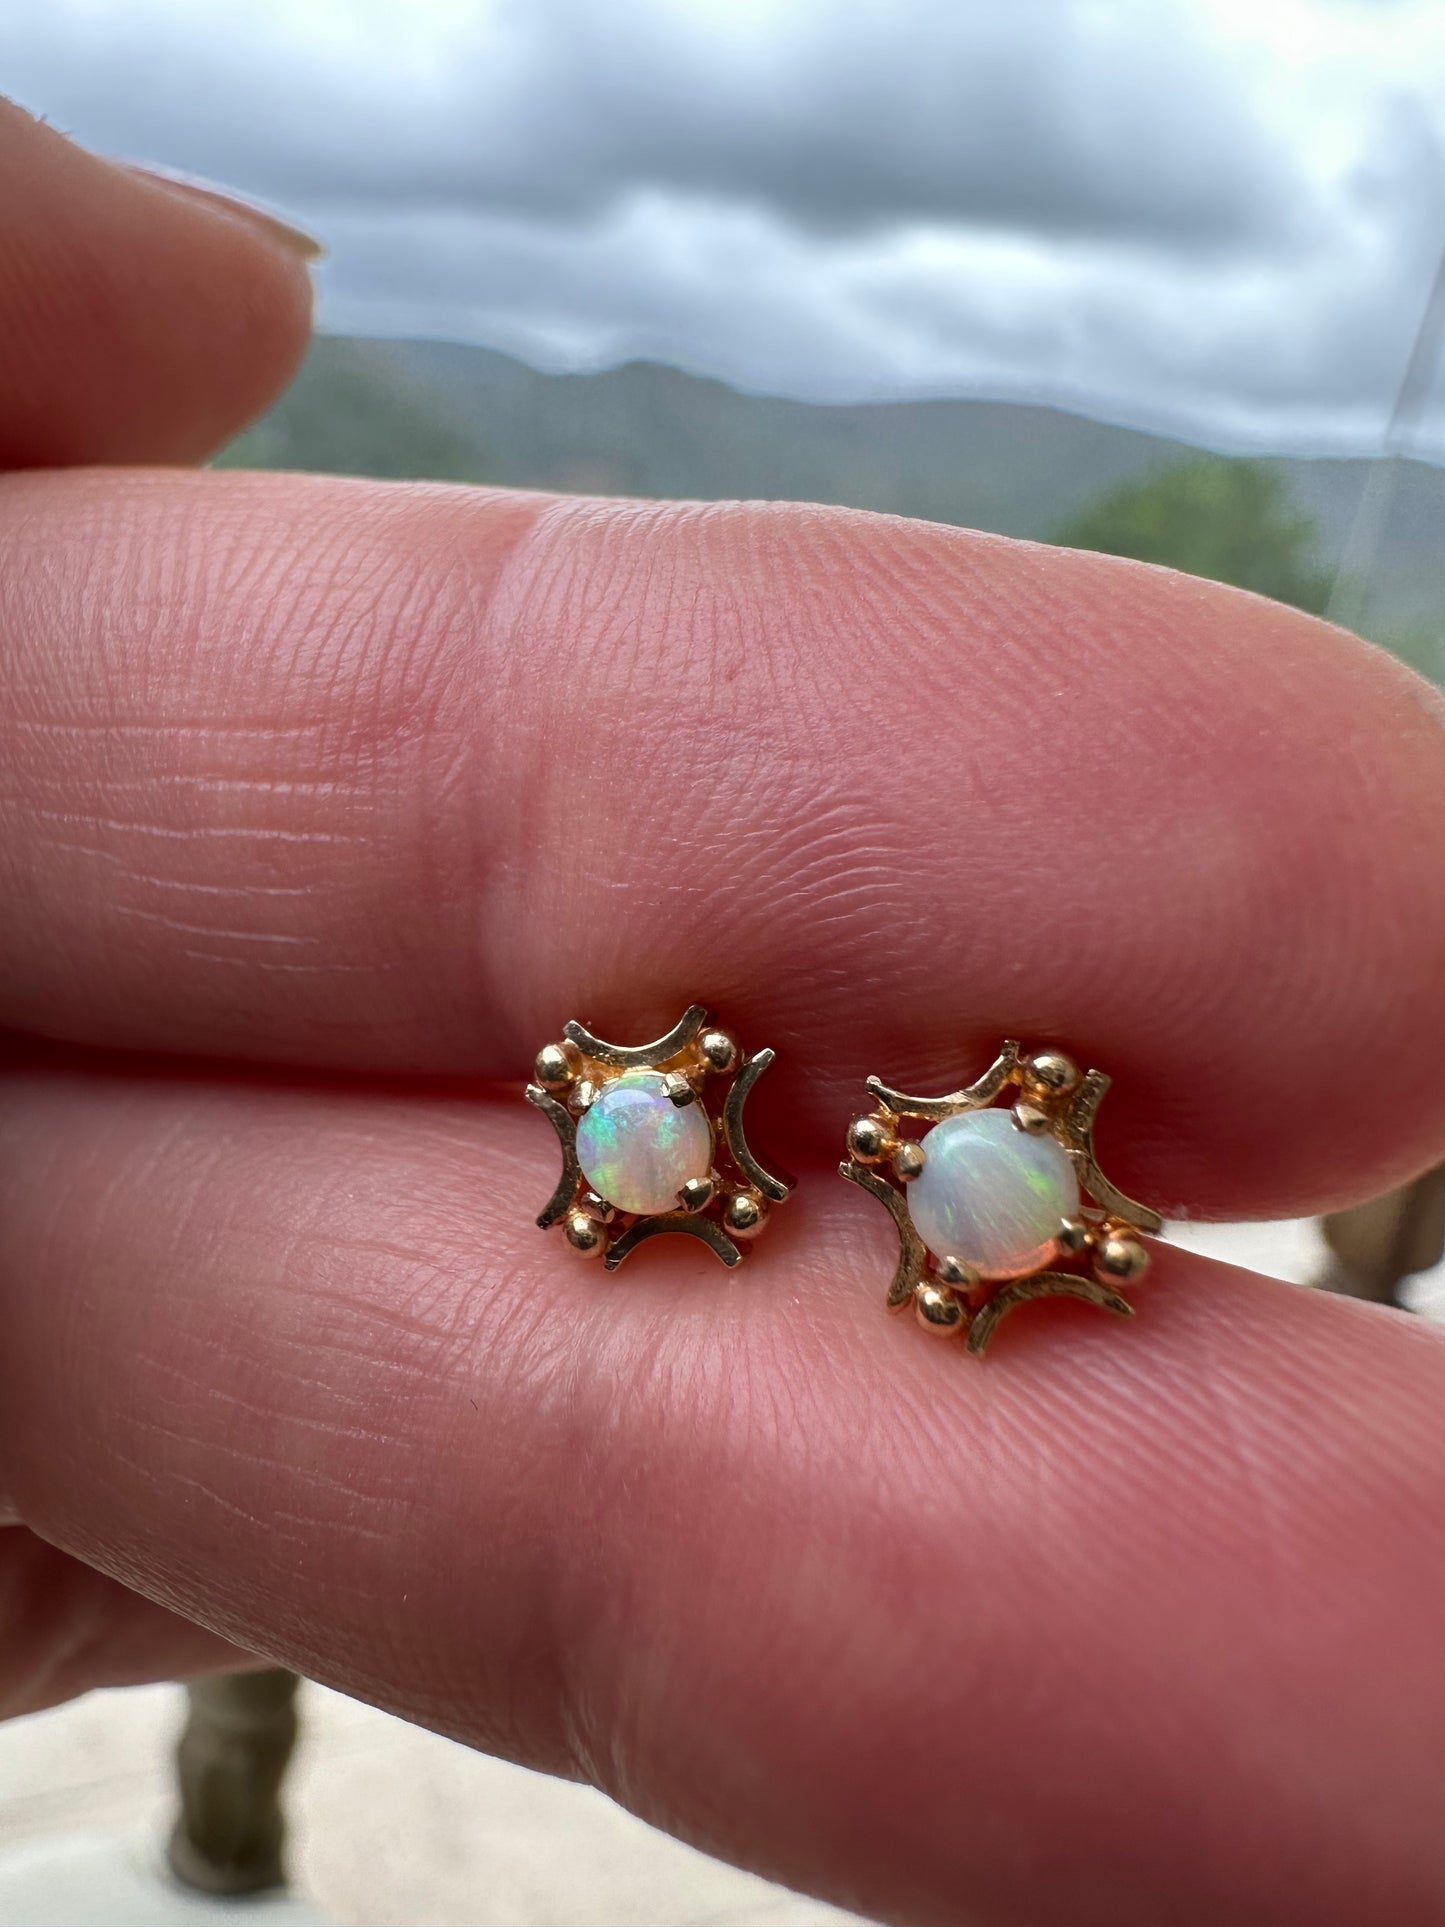 10k yellow gold Australian opal stud earrings